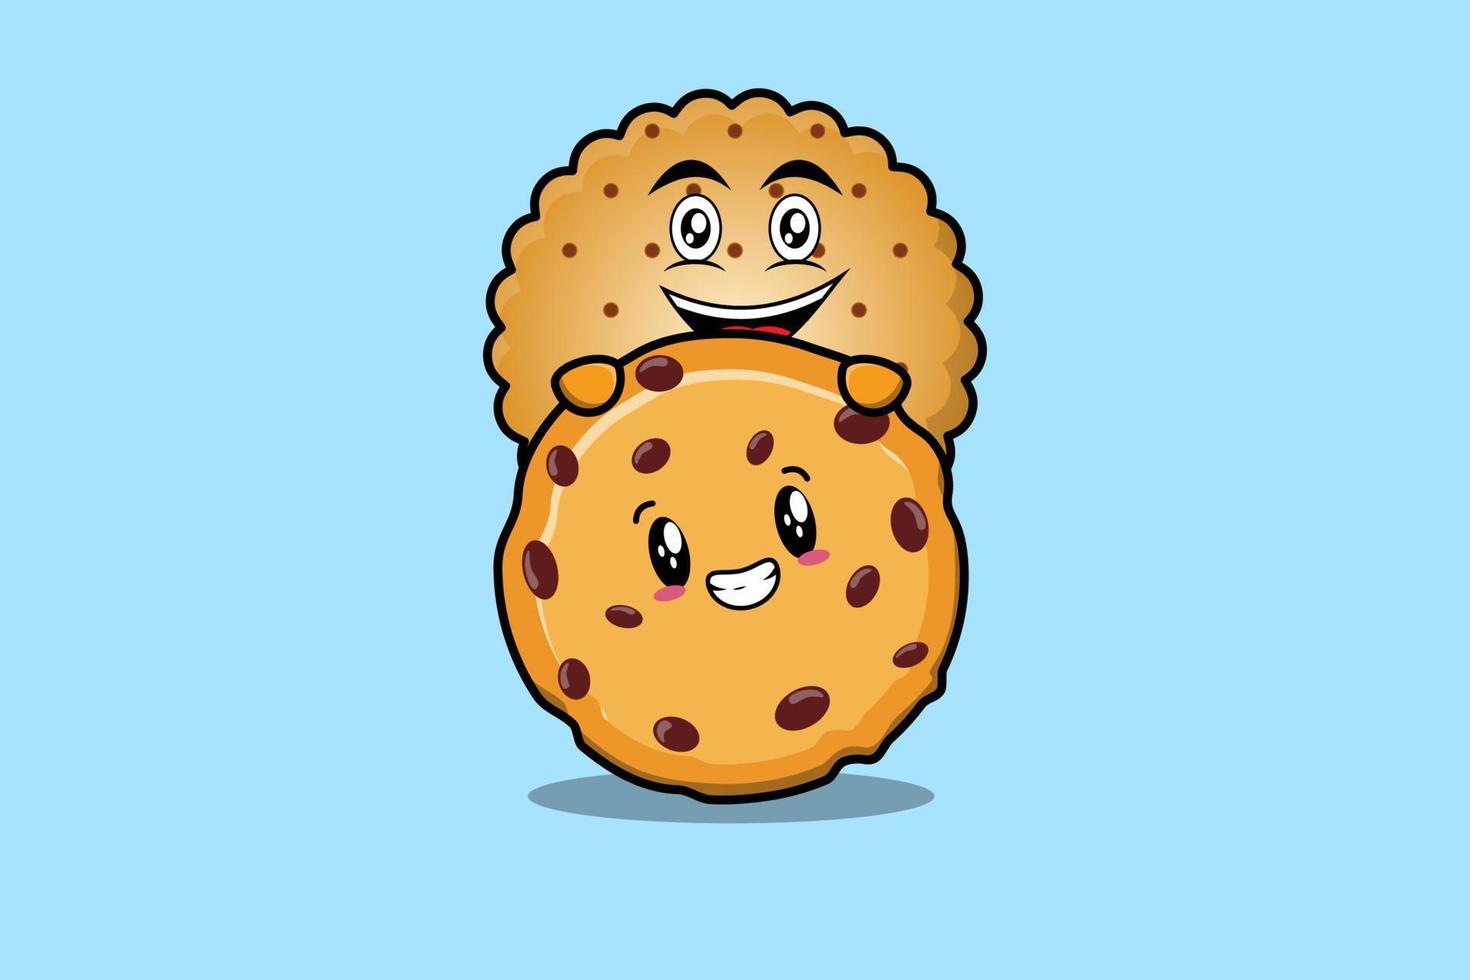 dessin animé de biscuits mignons caché dans l'illustration de biscuits vecteur